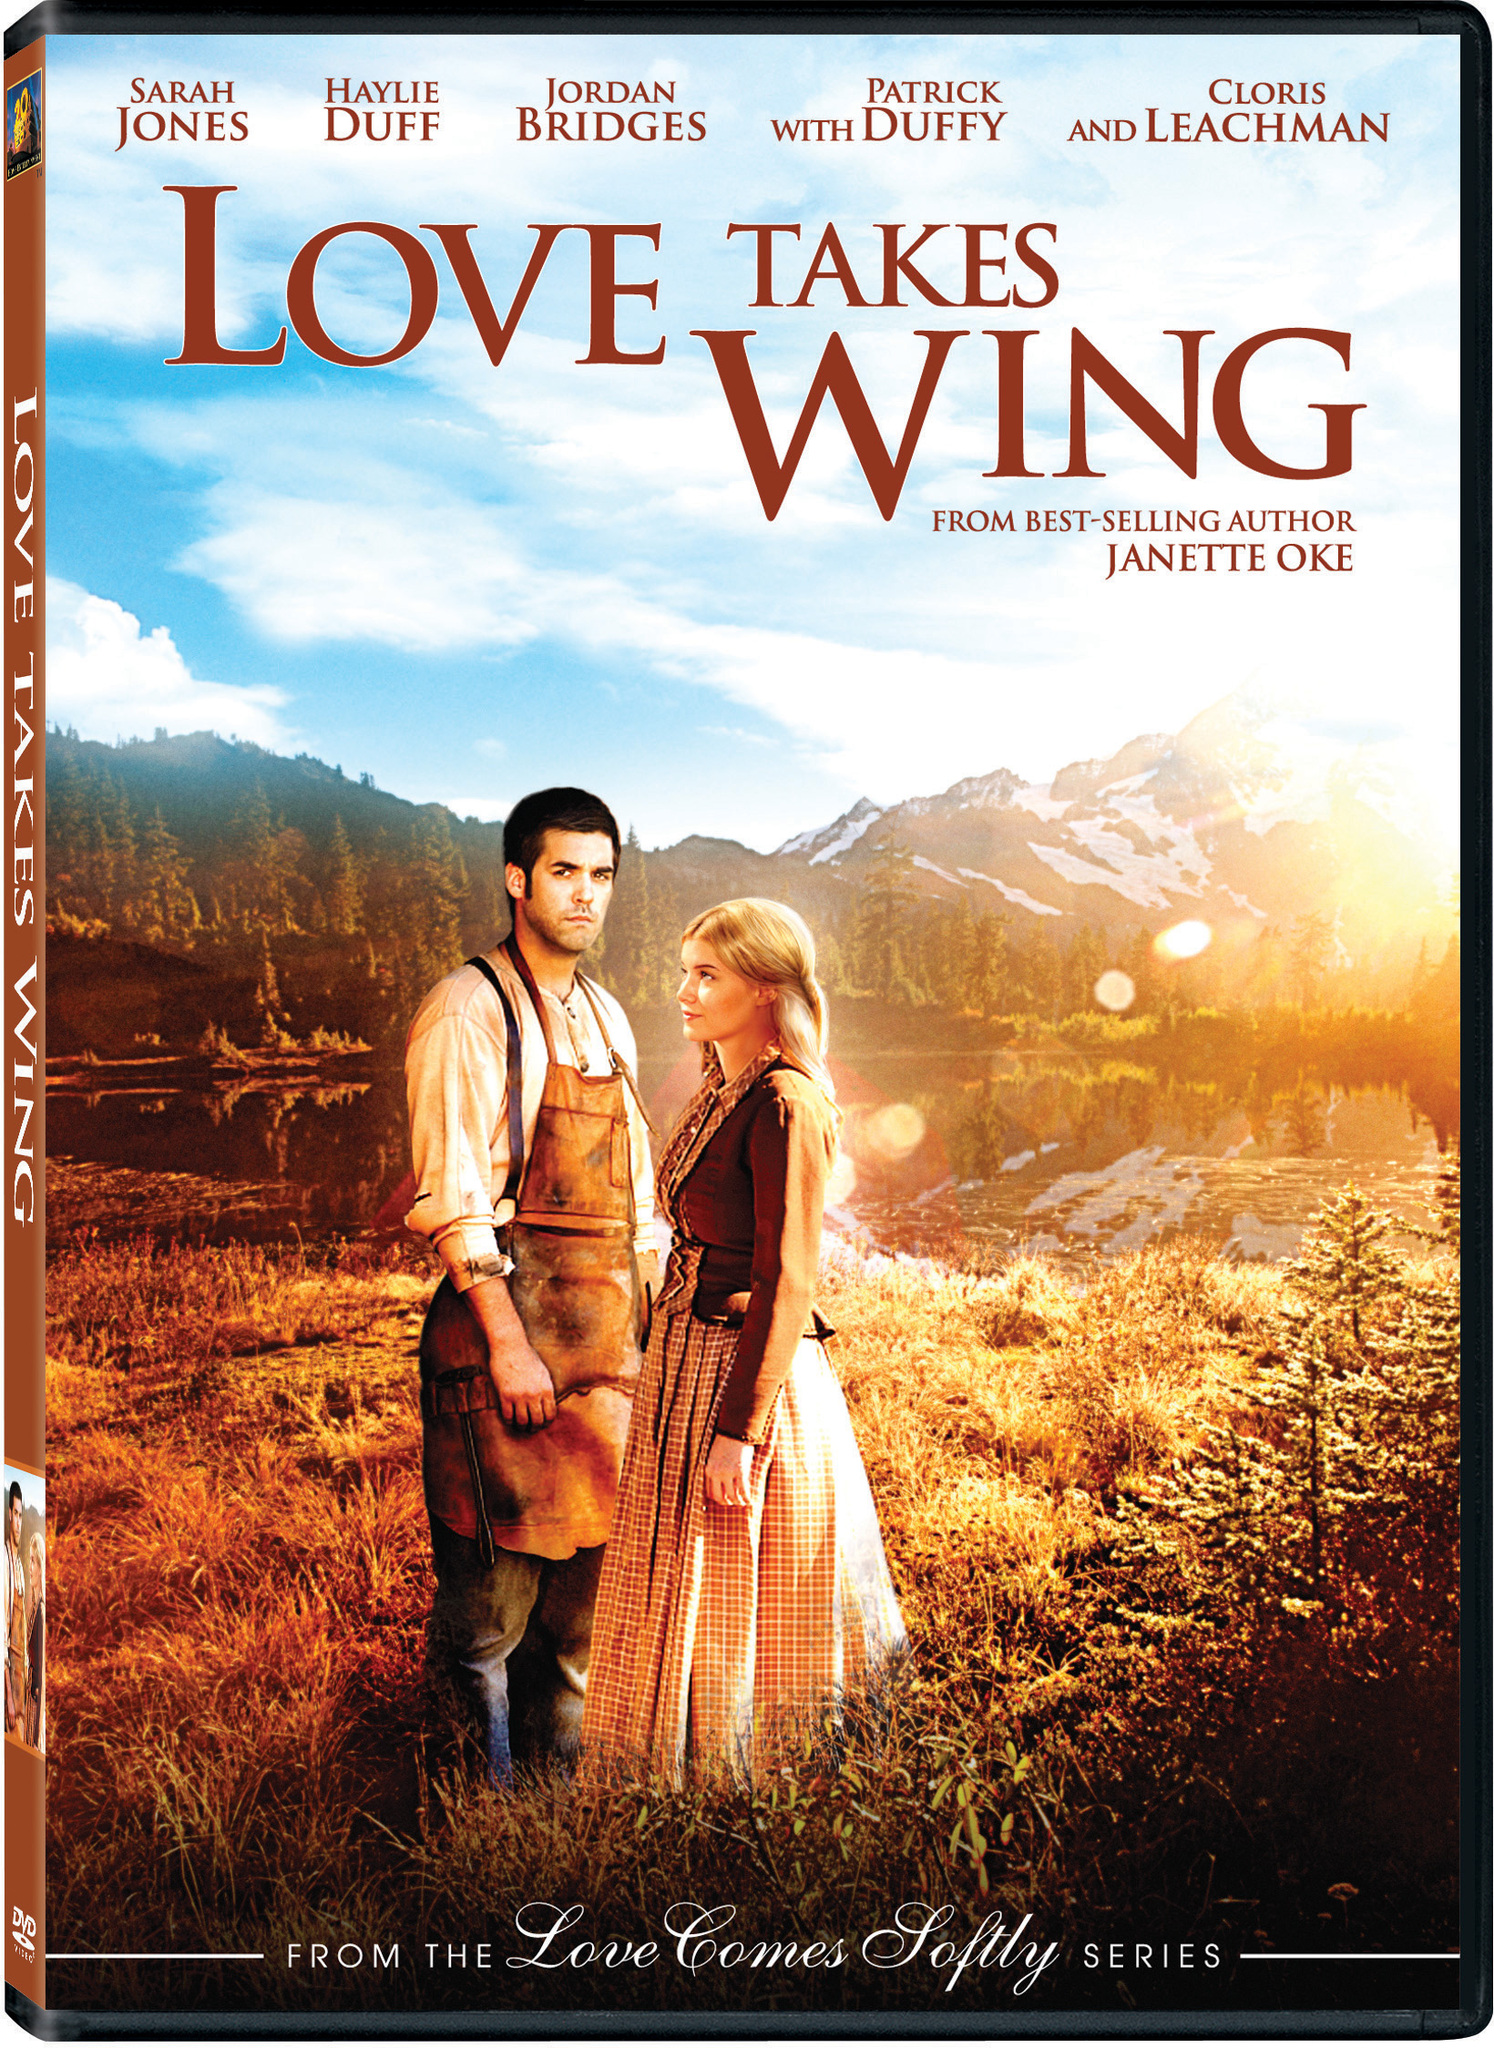 Jordan Bridges and Sarah Jones in Love Takes Wing (2009)